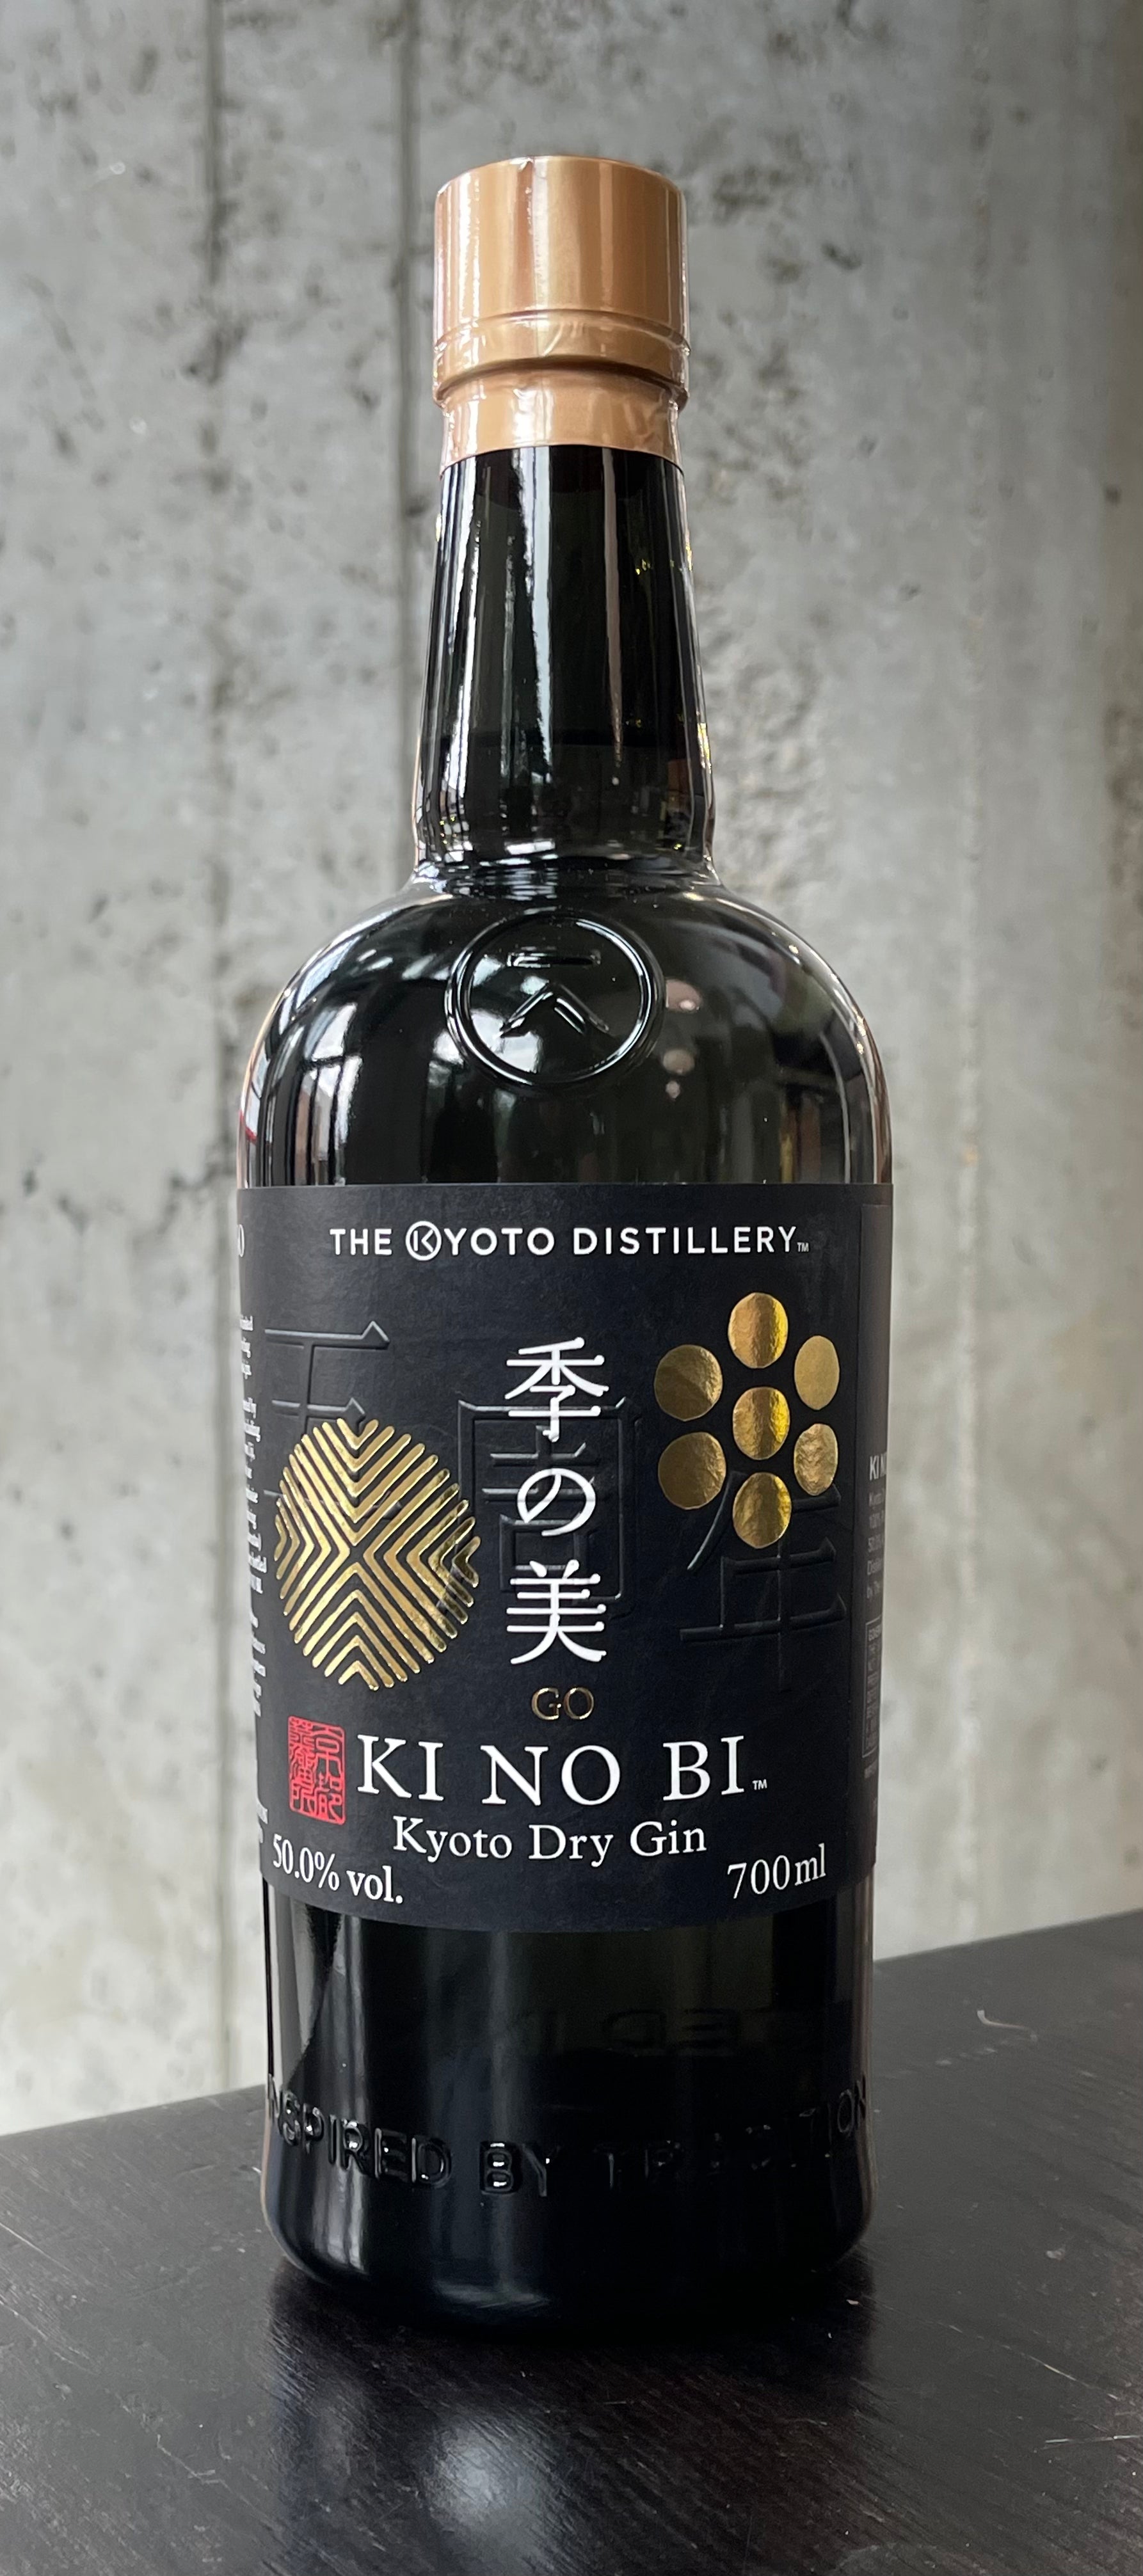 Kyoto Distillery KI NO BI "GO" 5th Anniversary Release Dry Gin